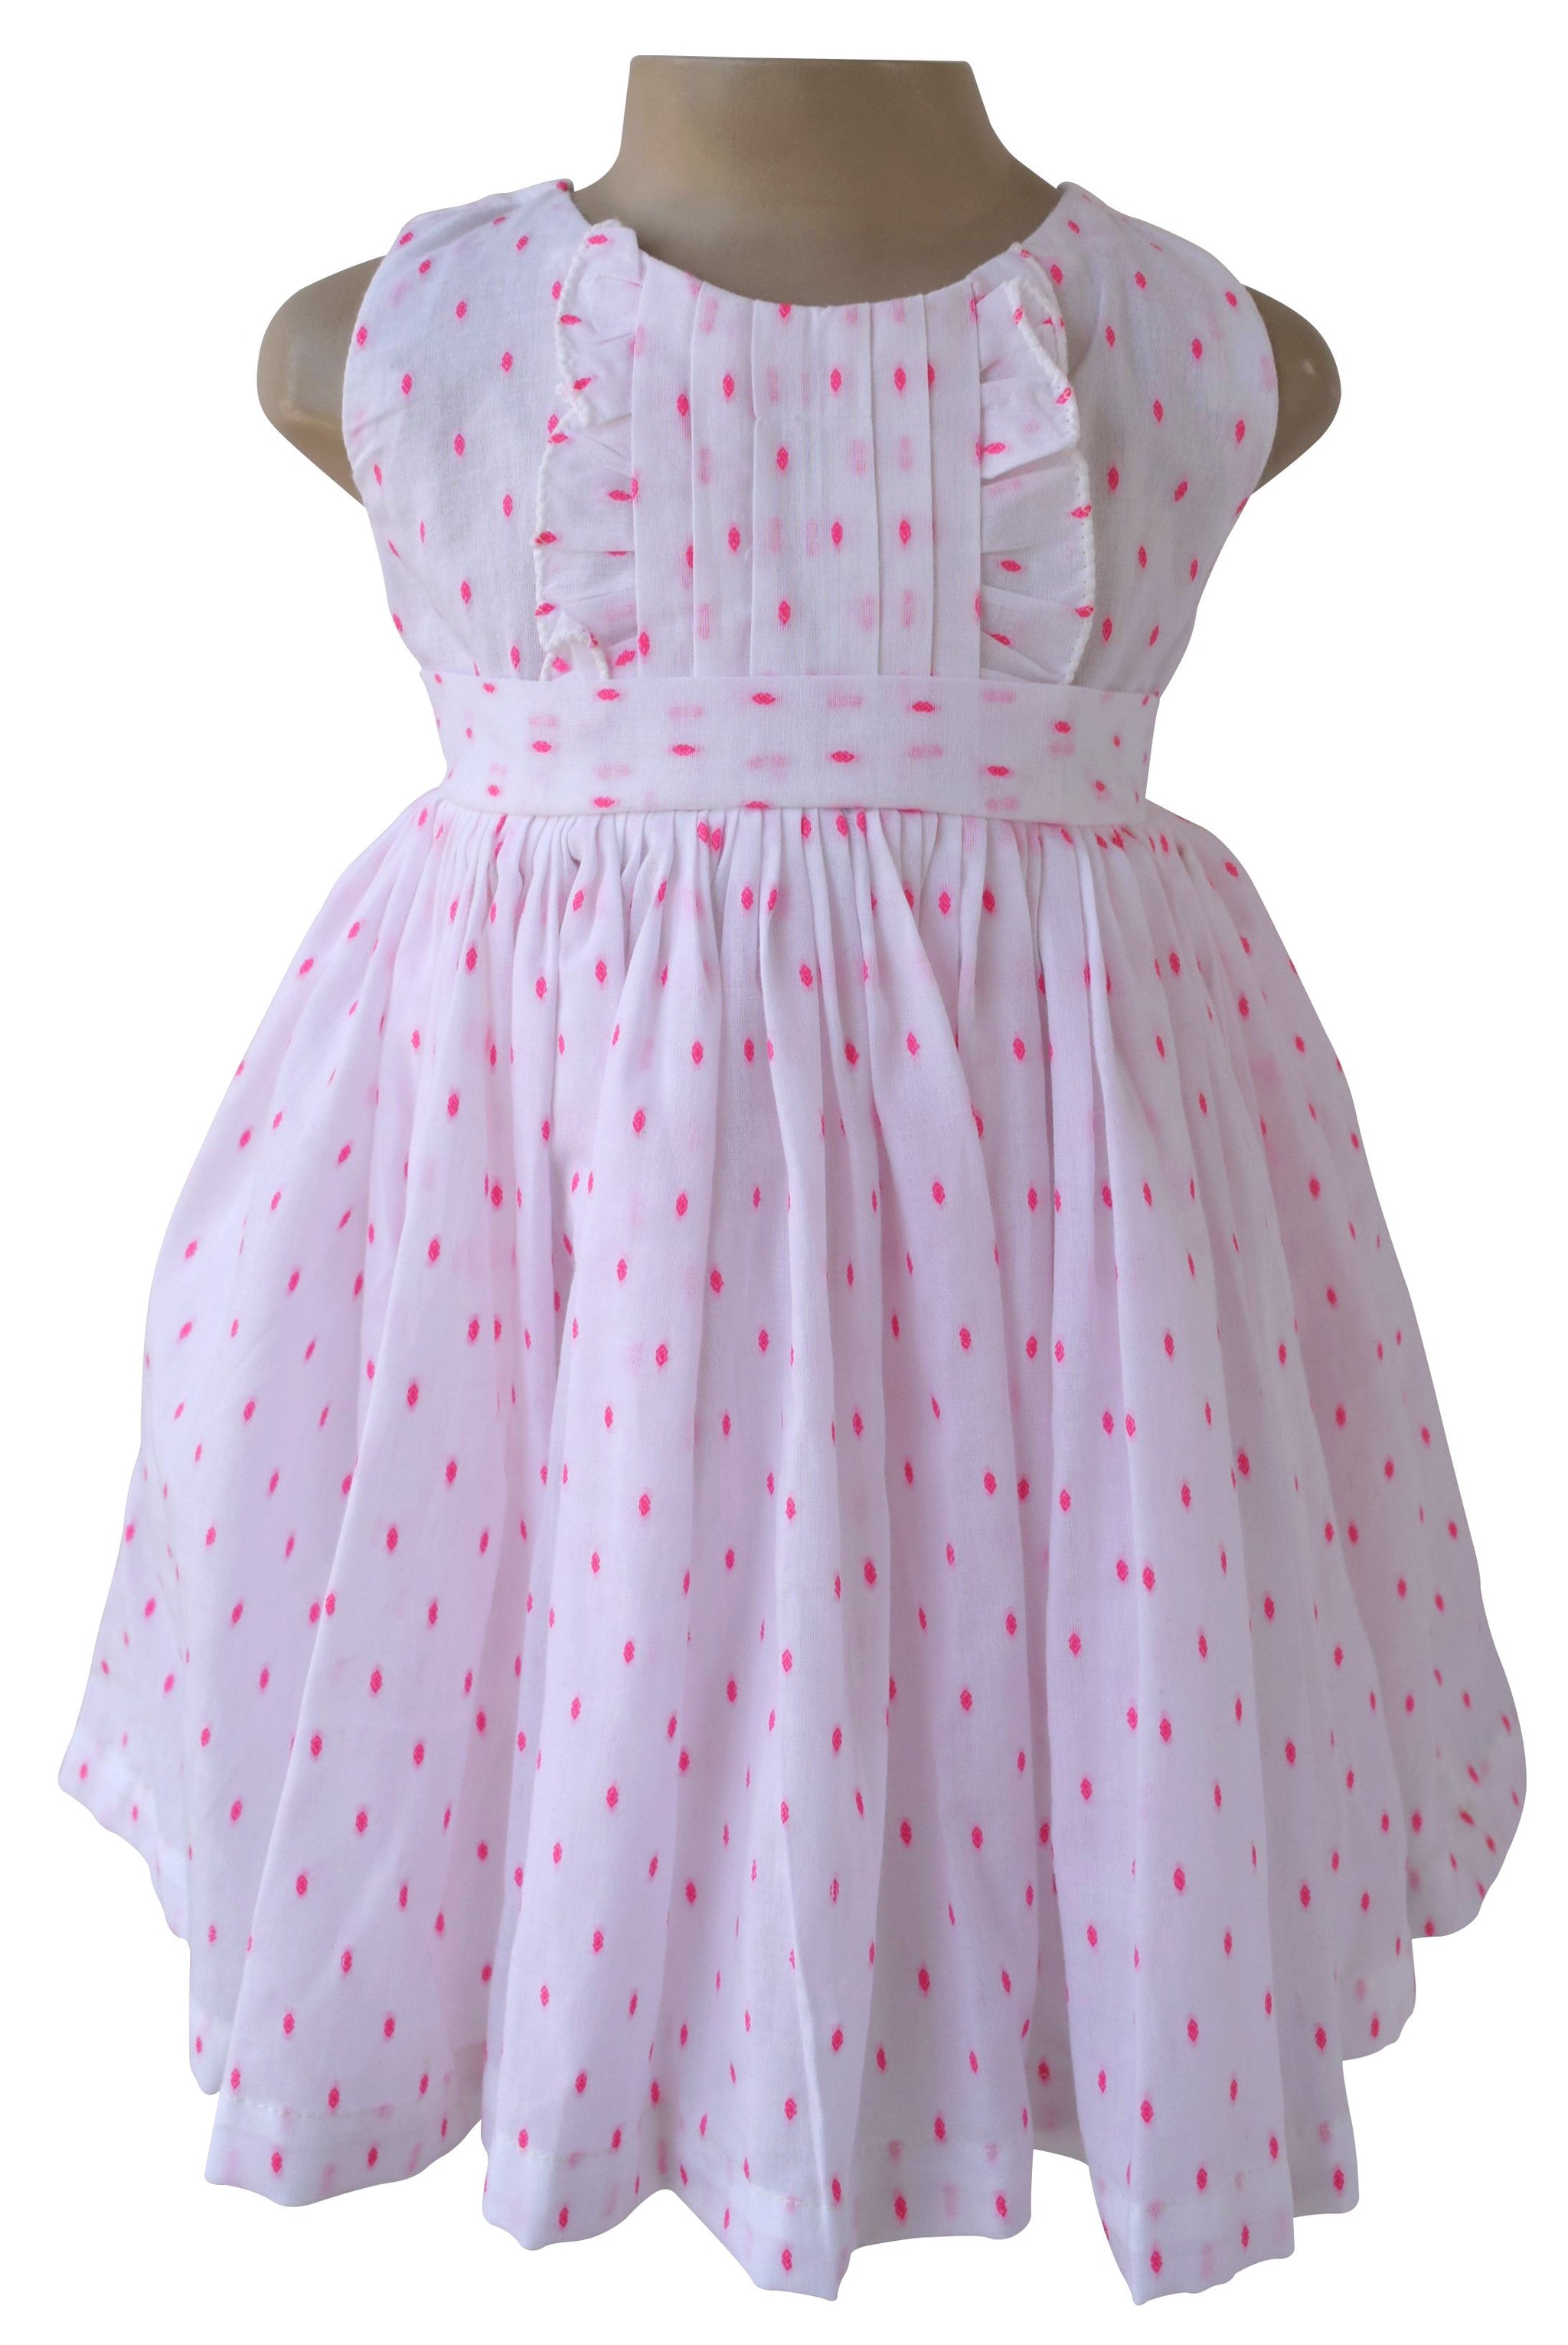 childrens polka dot dresses uk